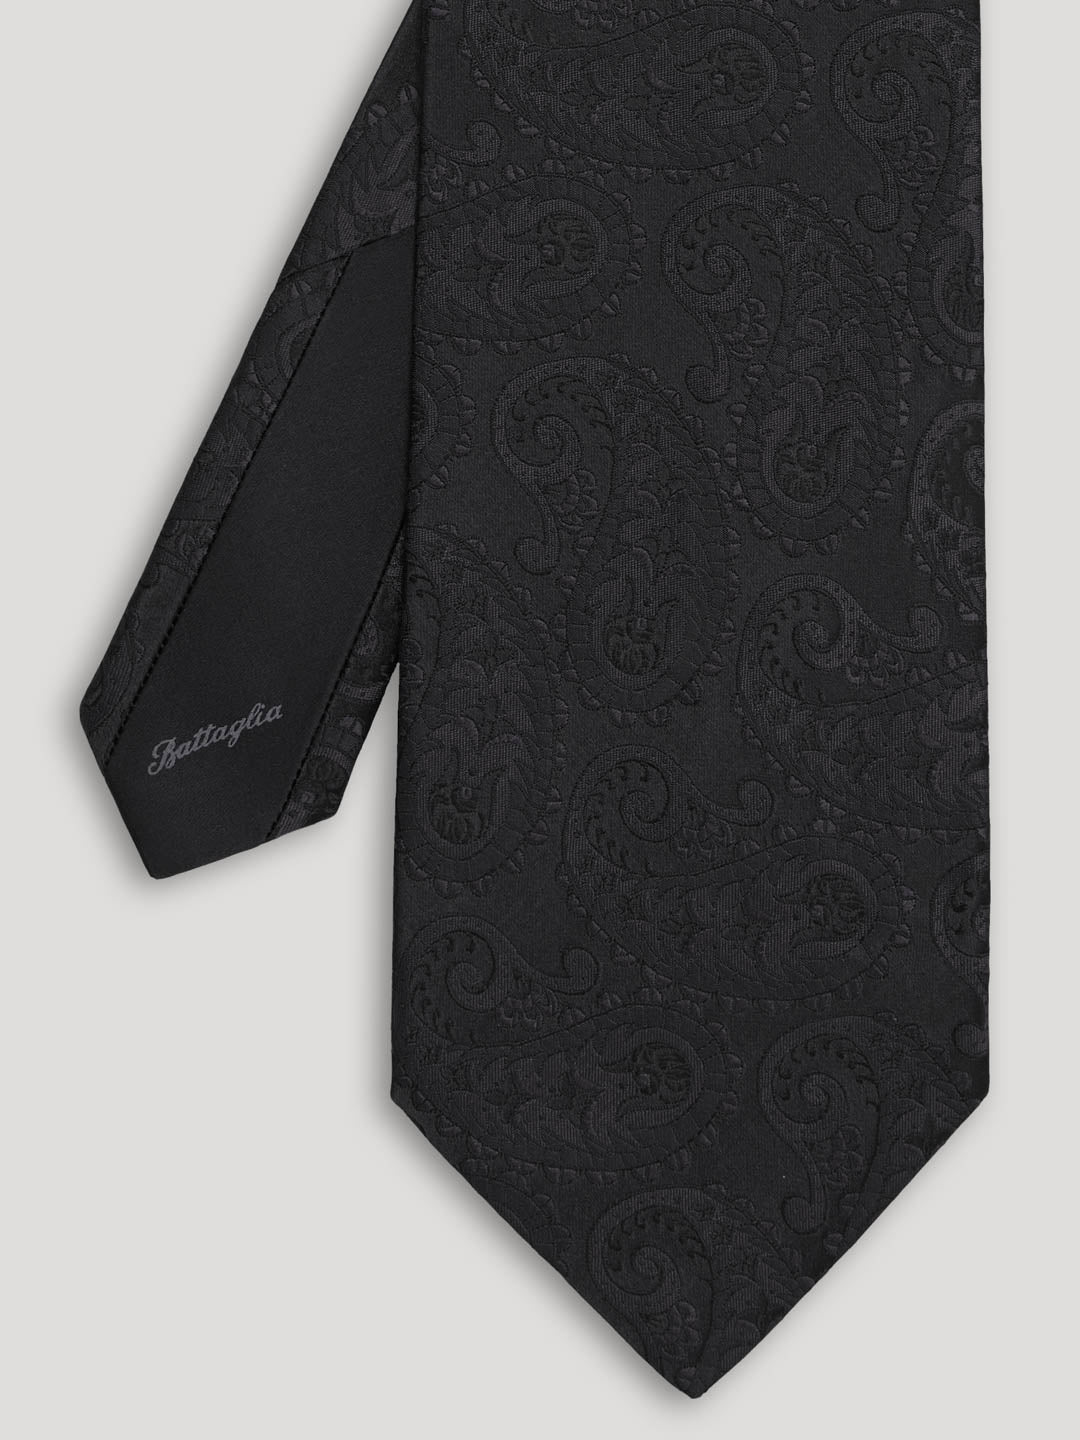 Black tone one tone paisley tie. 